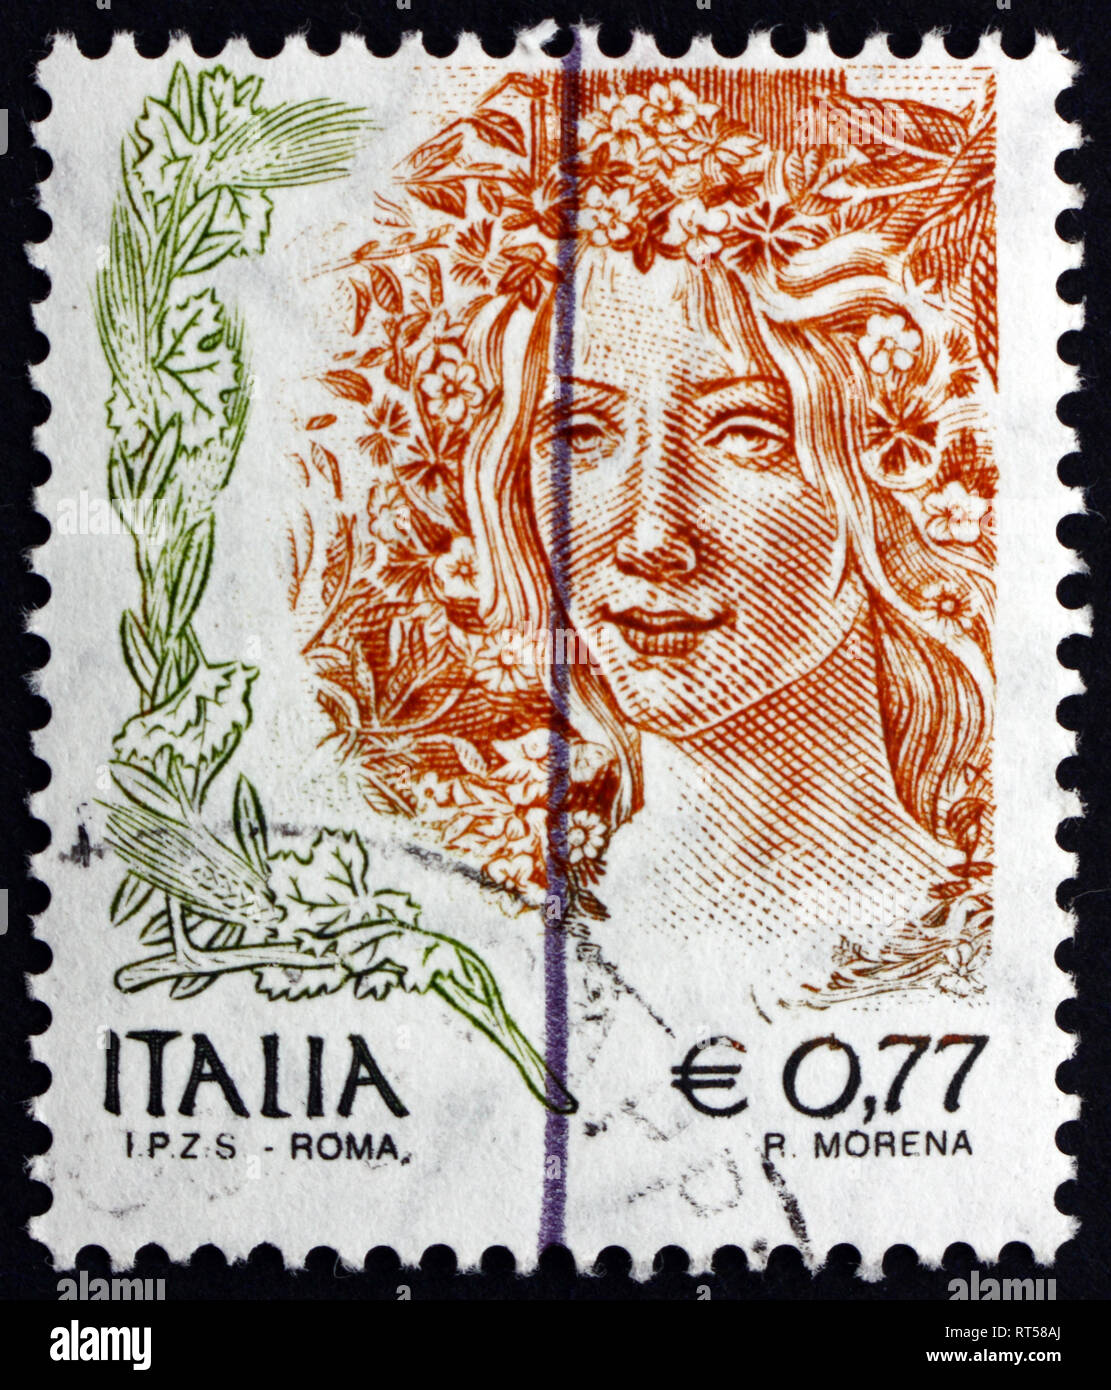 Italie - circa 2003 : timbre imprimé dans l'Italie montre Primavera, Détail de la peinture de Botticelli, vers 2003 Banque D'Images